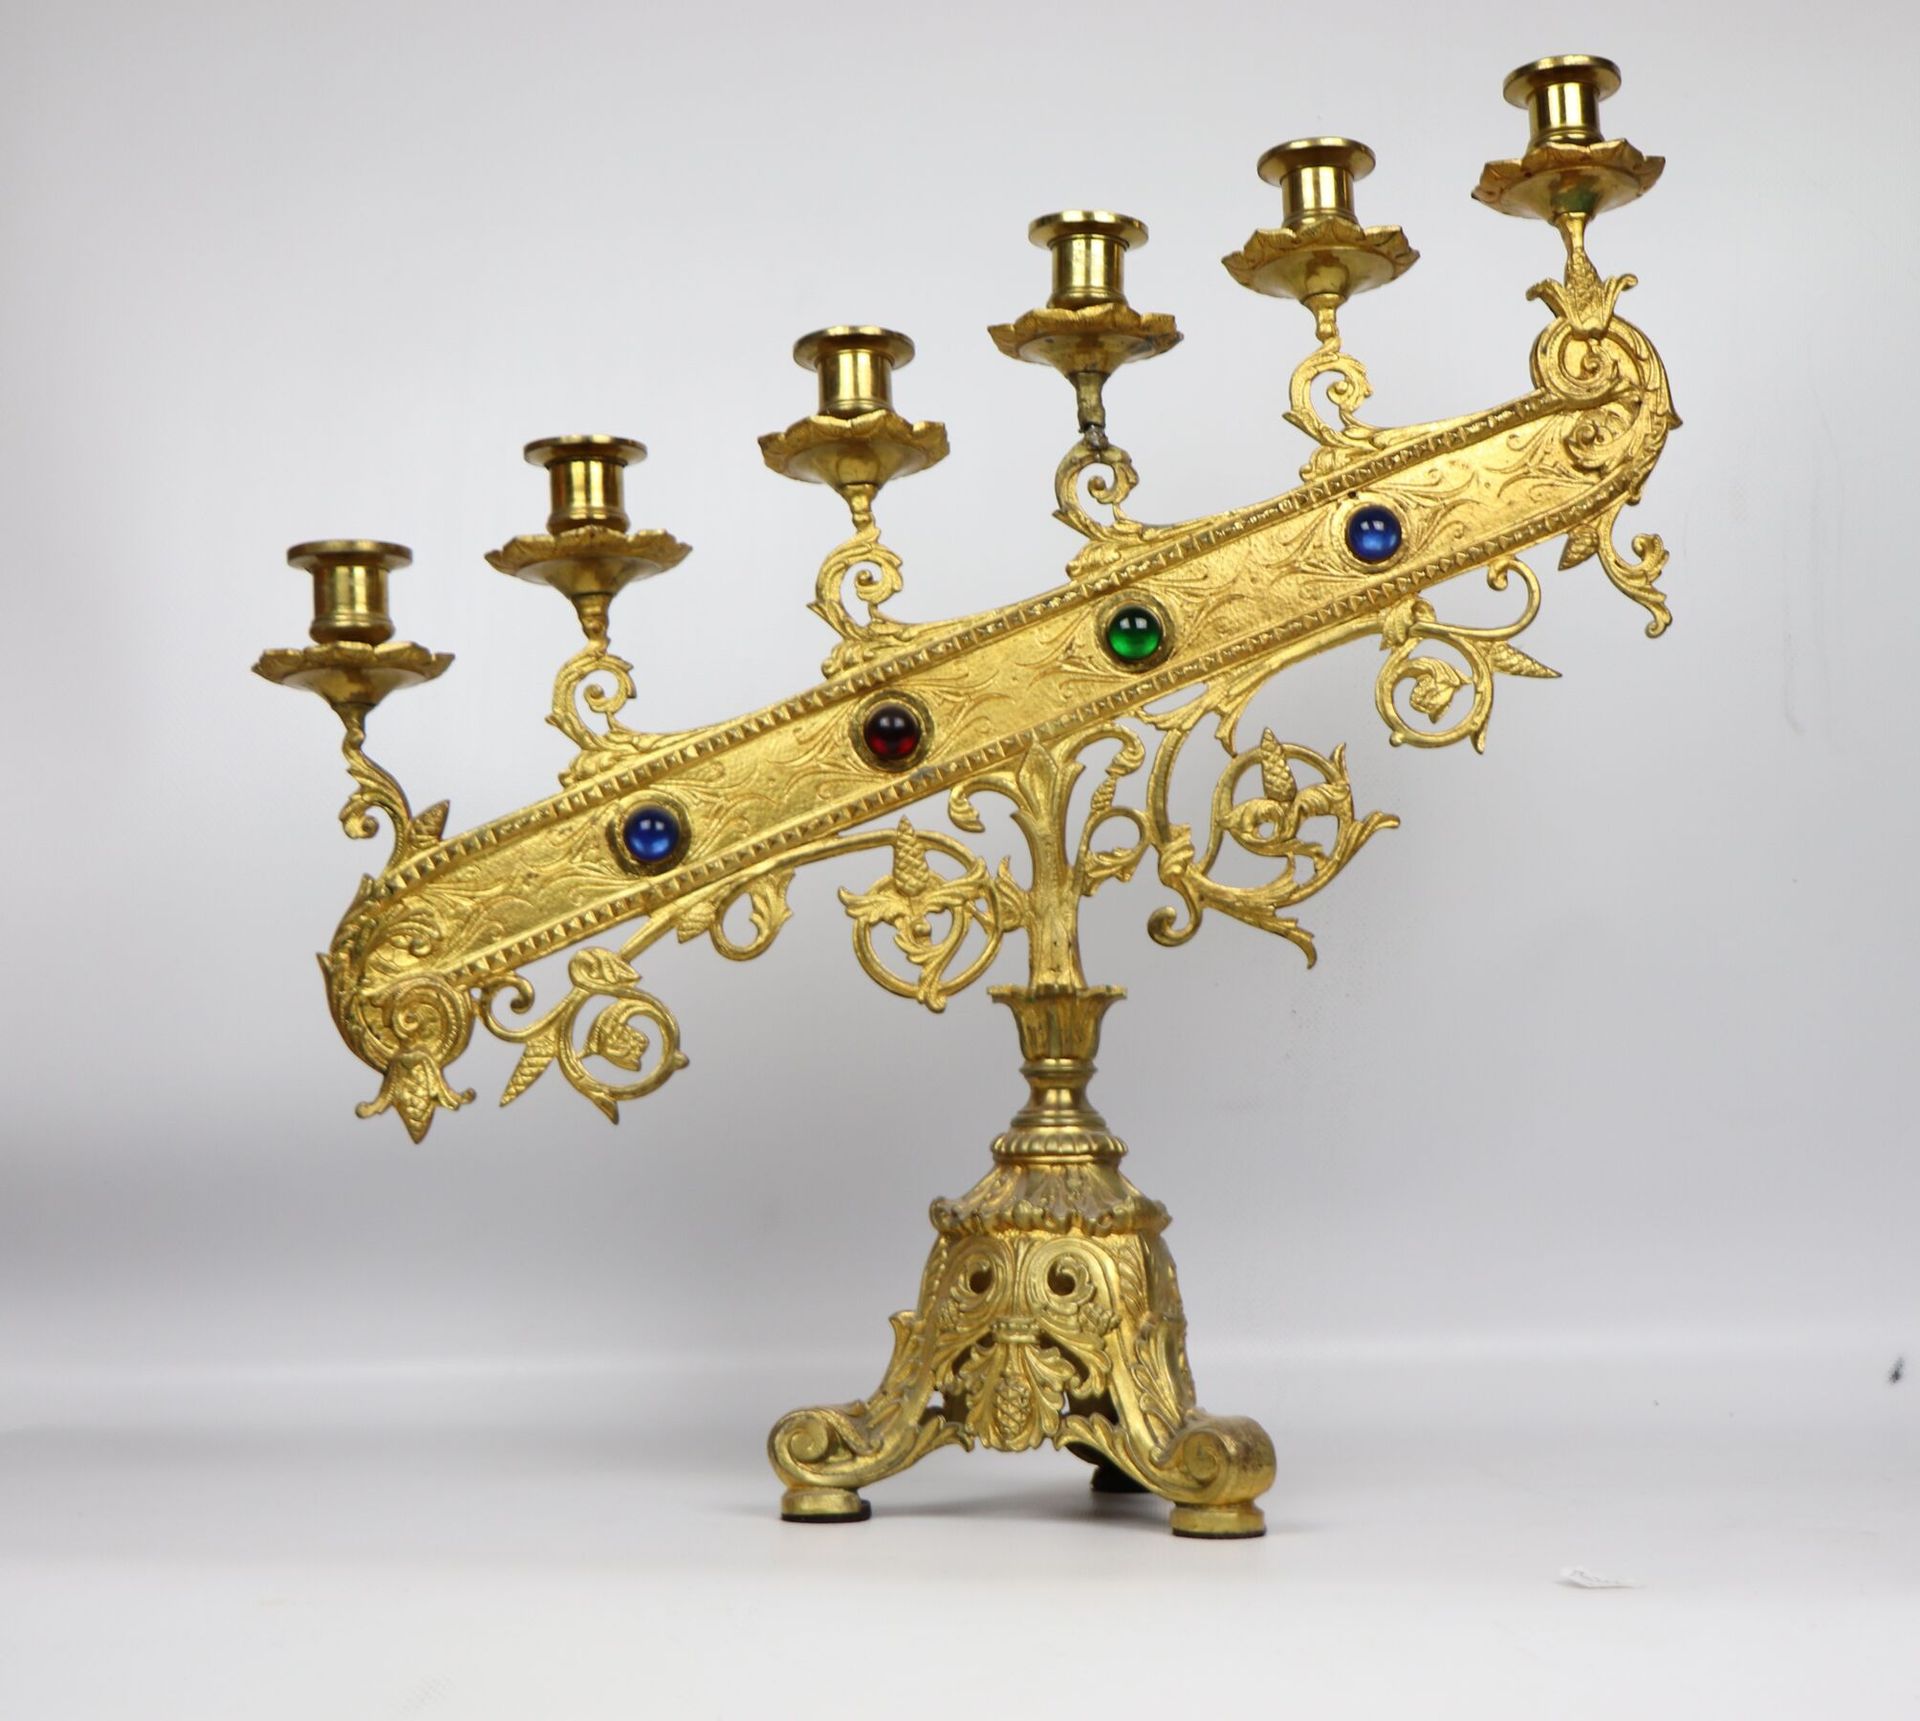 Null 鎏金青铜祭坛烛台有六个灯。 
上升的灯臂上装饰有四个彩色凸圆形宝石。
三角形的底座上有叶子的装饰。 
大约1900年。 
高_49厘米，宽_46厘米，&hellip;